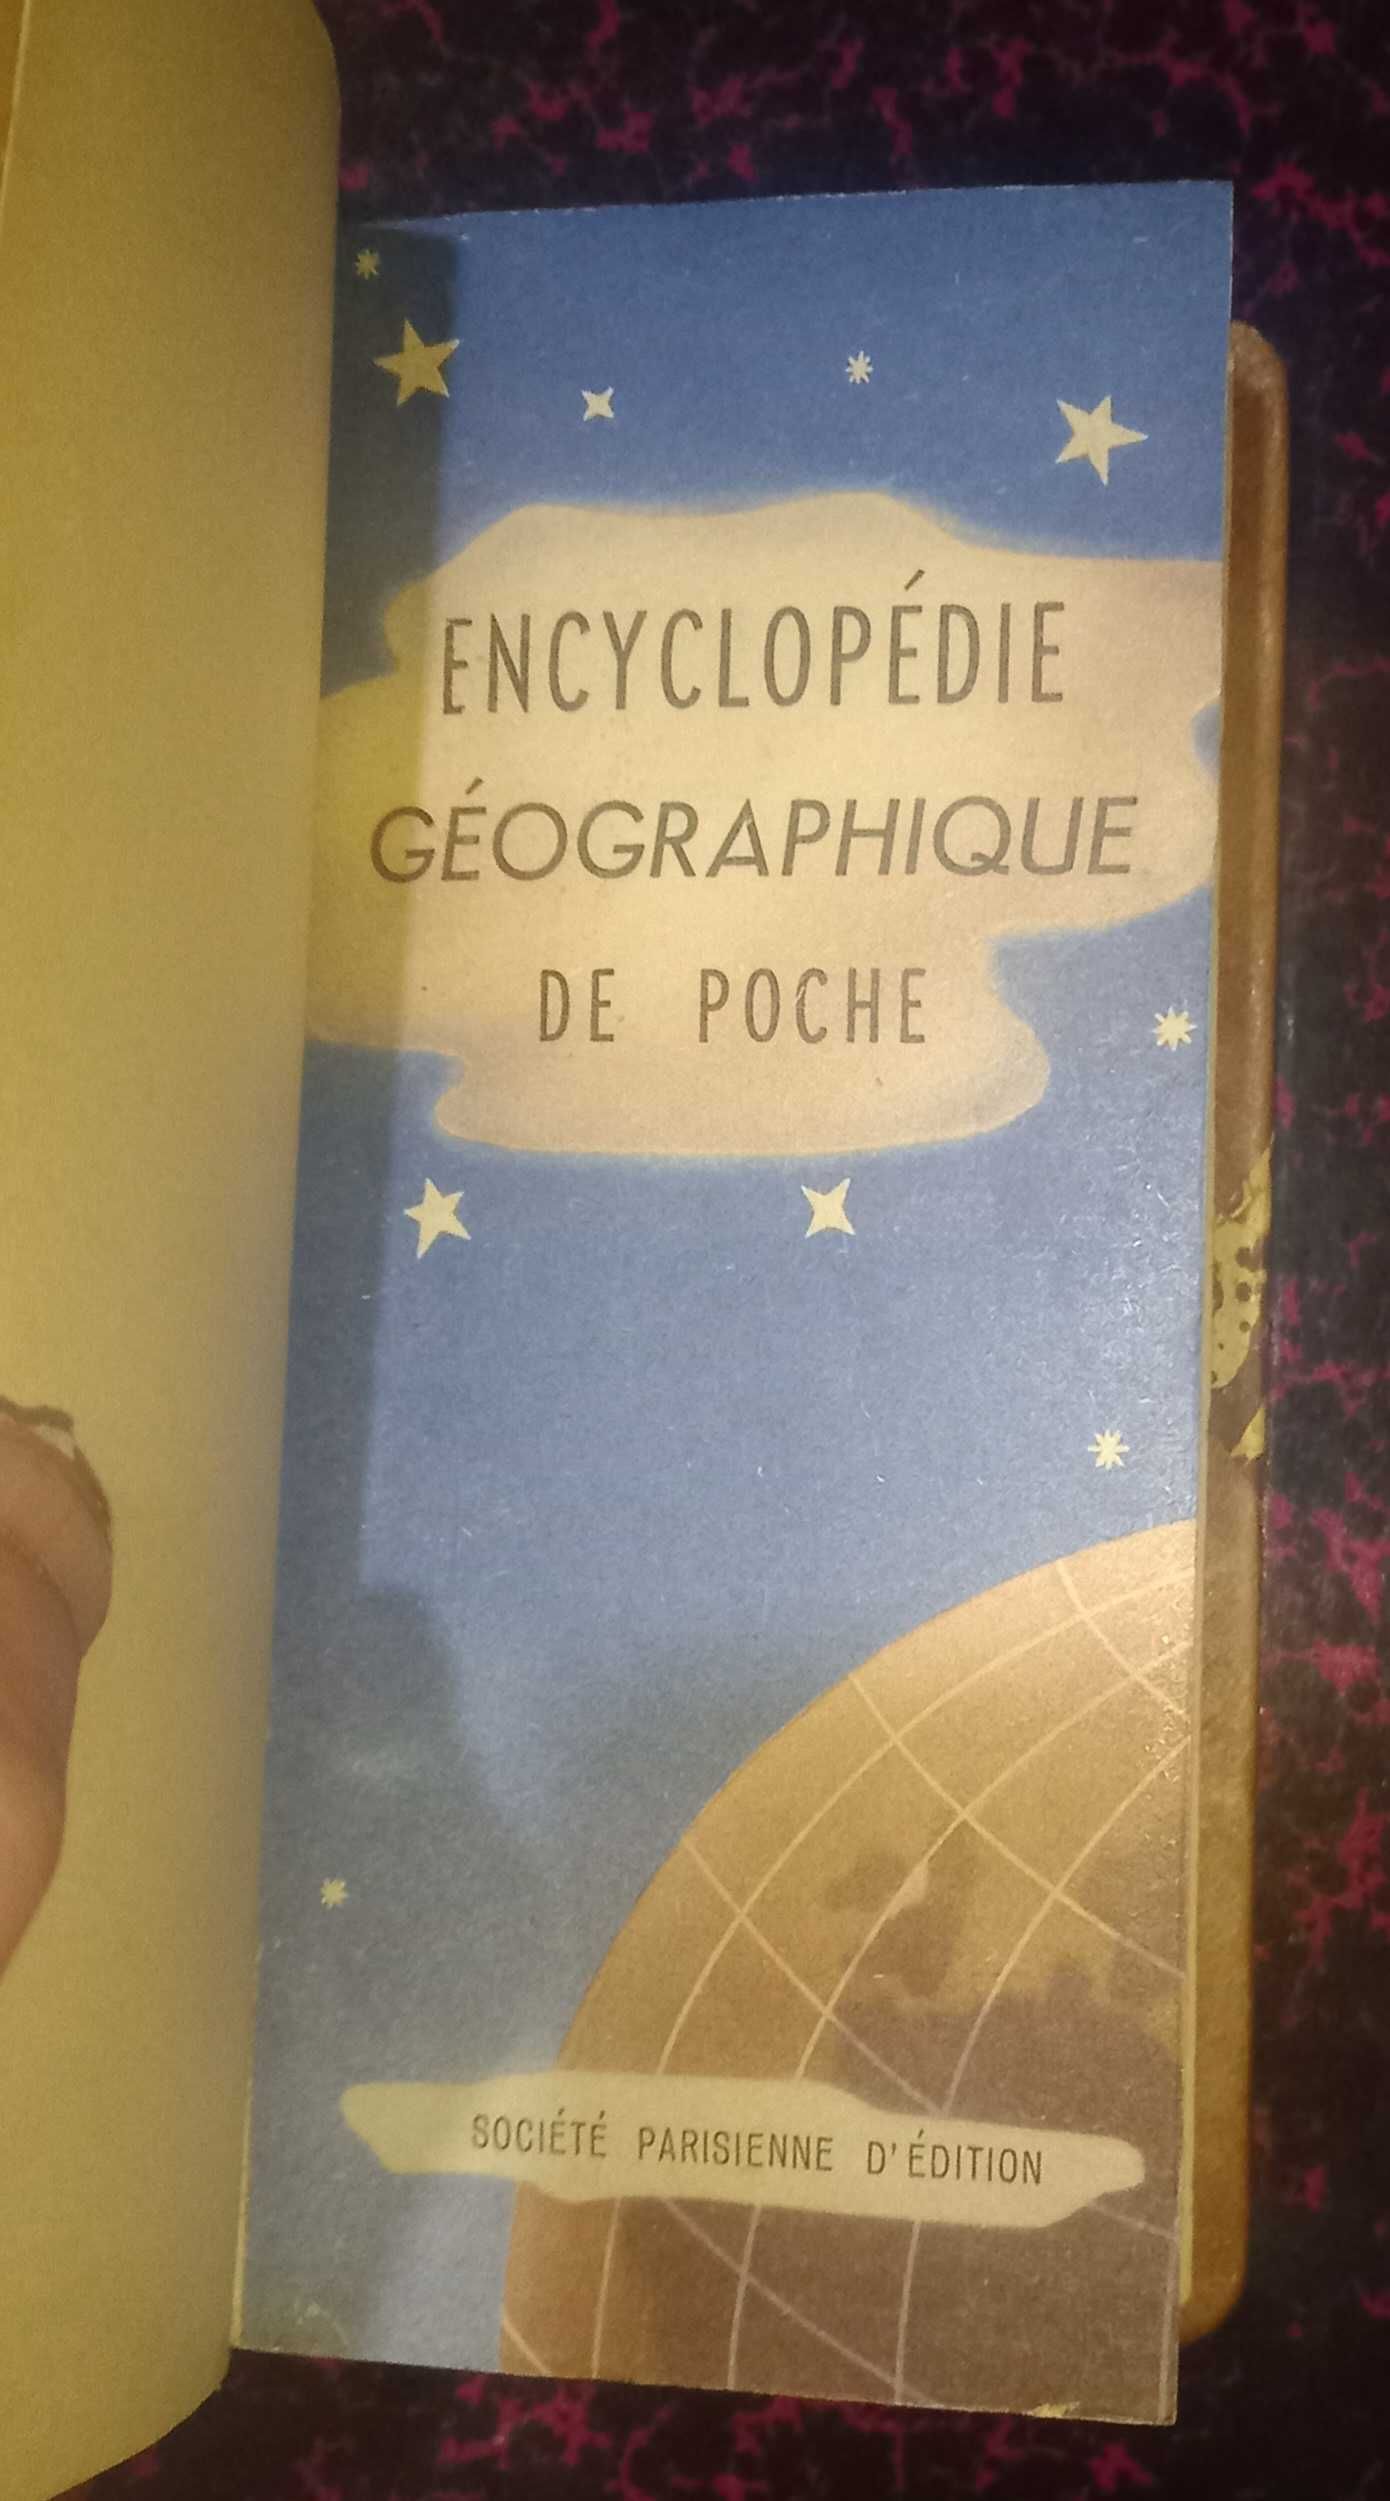 Encyclopedie Geographique de Poche.